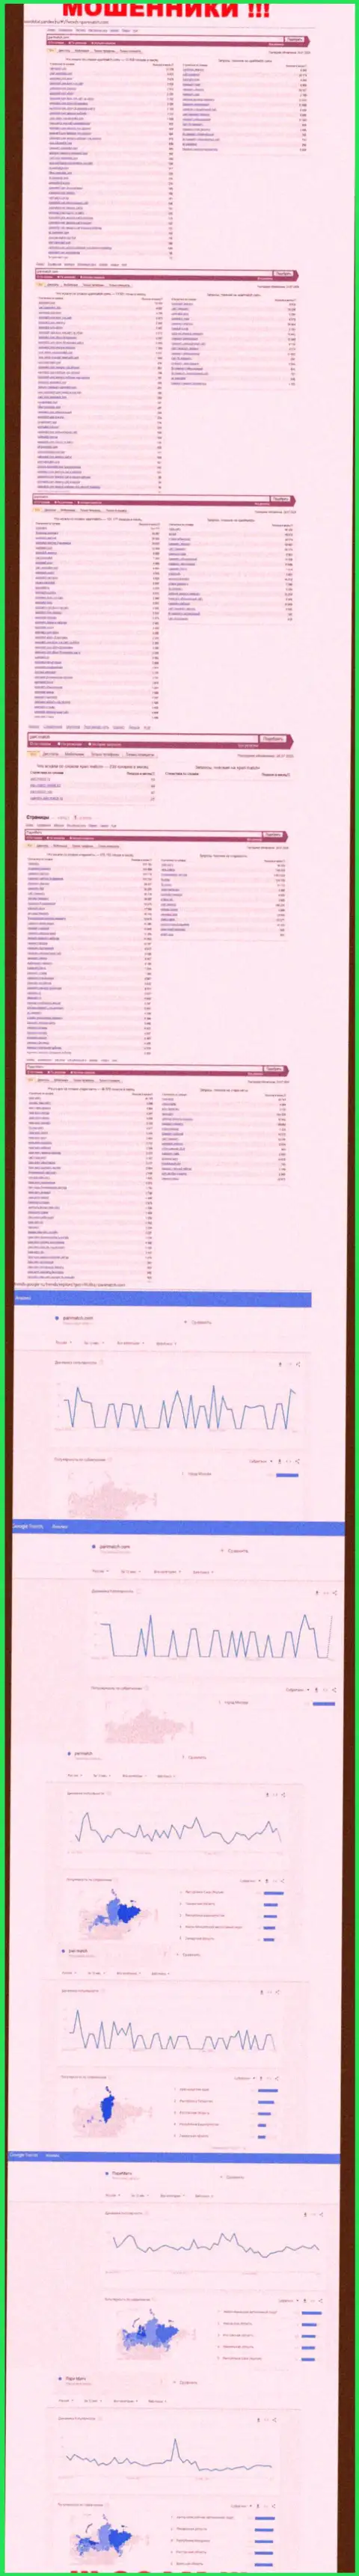 Количество online запросов в поисковиках интернет сети по бренду лохотронщиков PariMatch